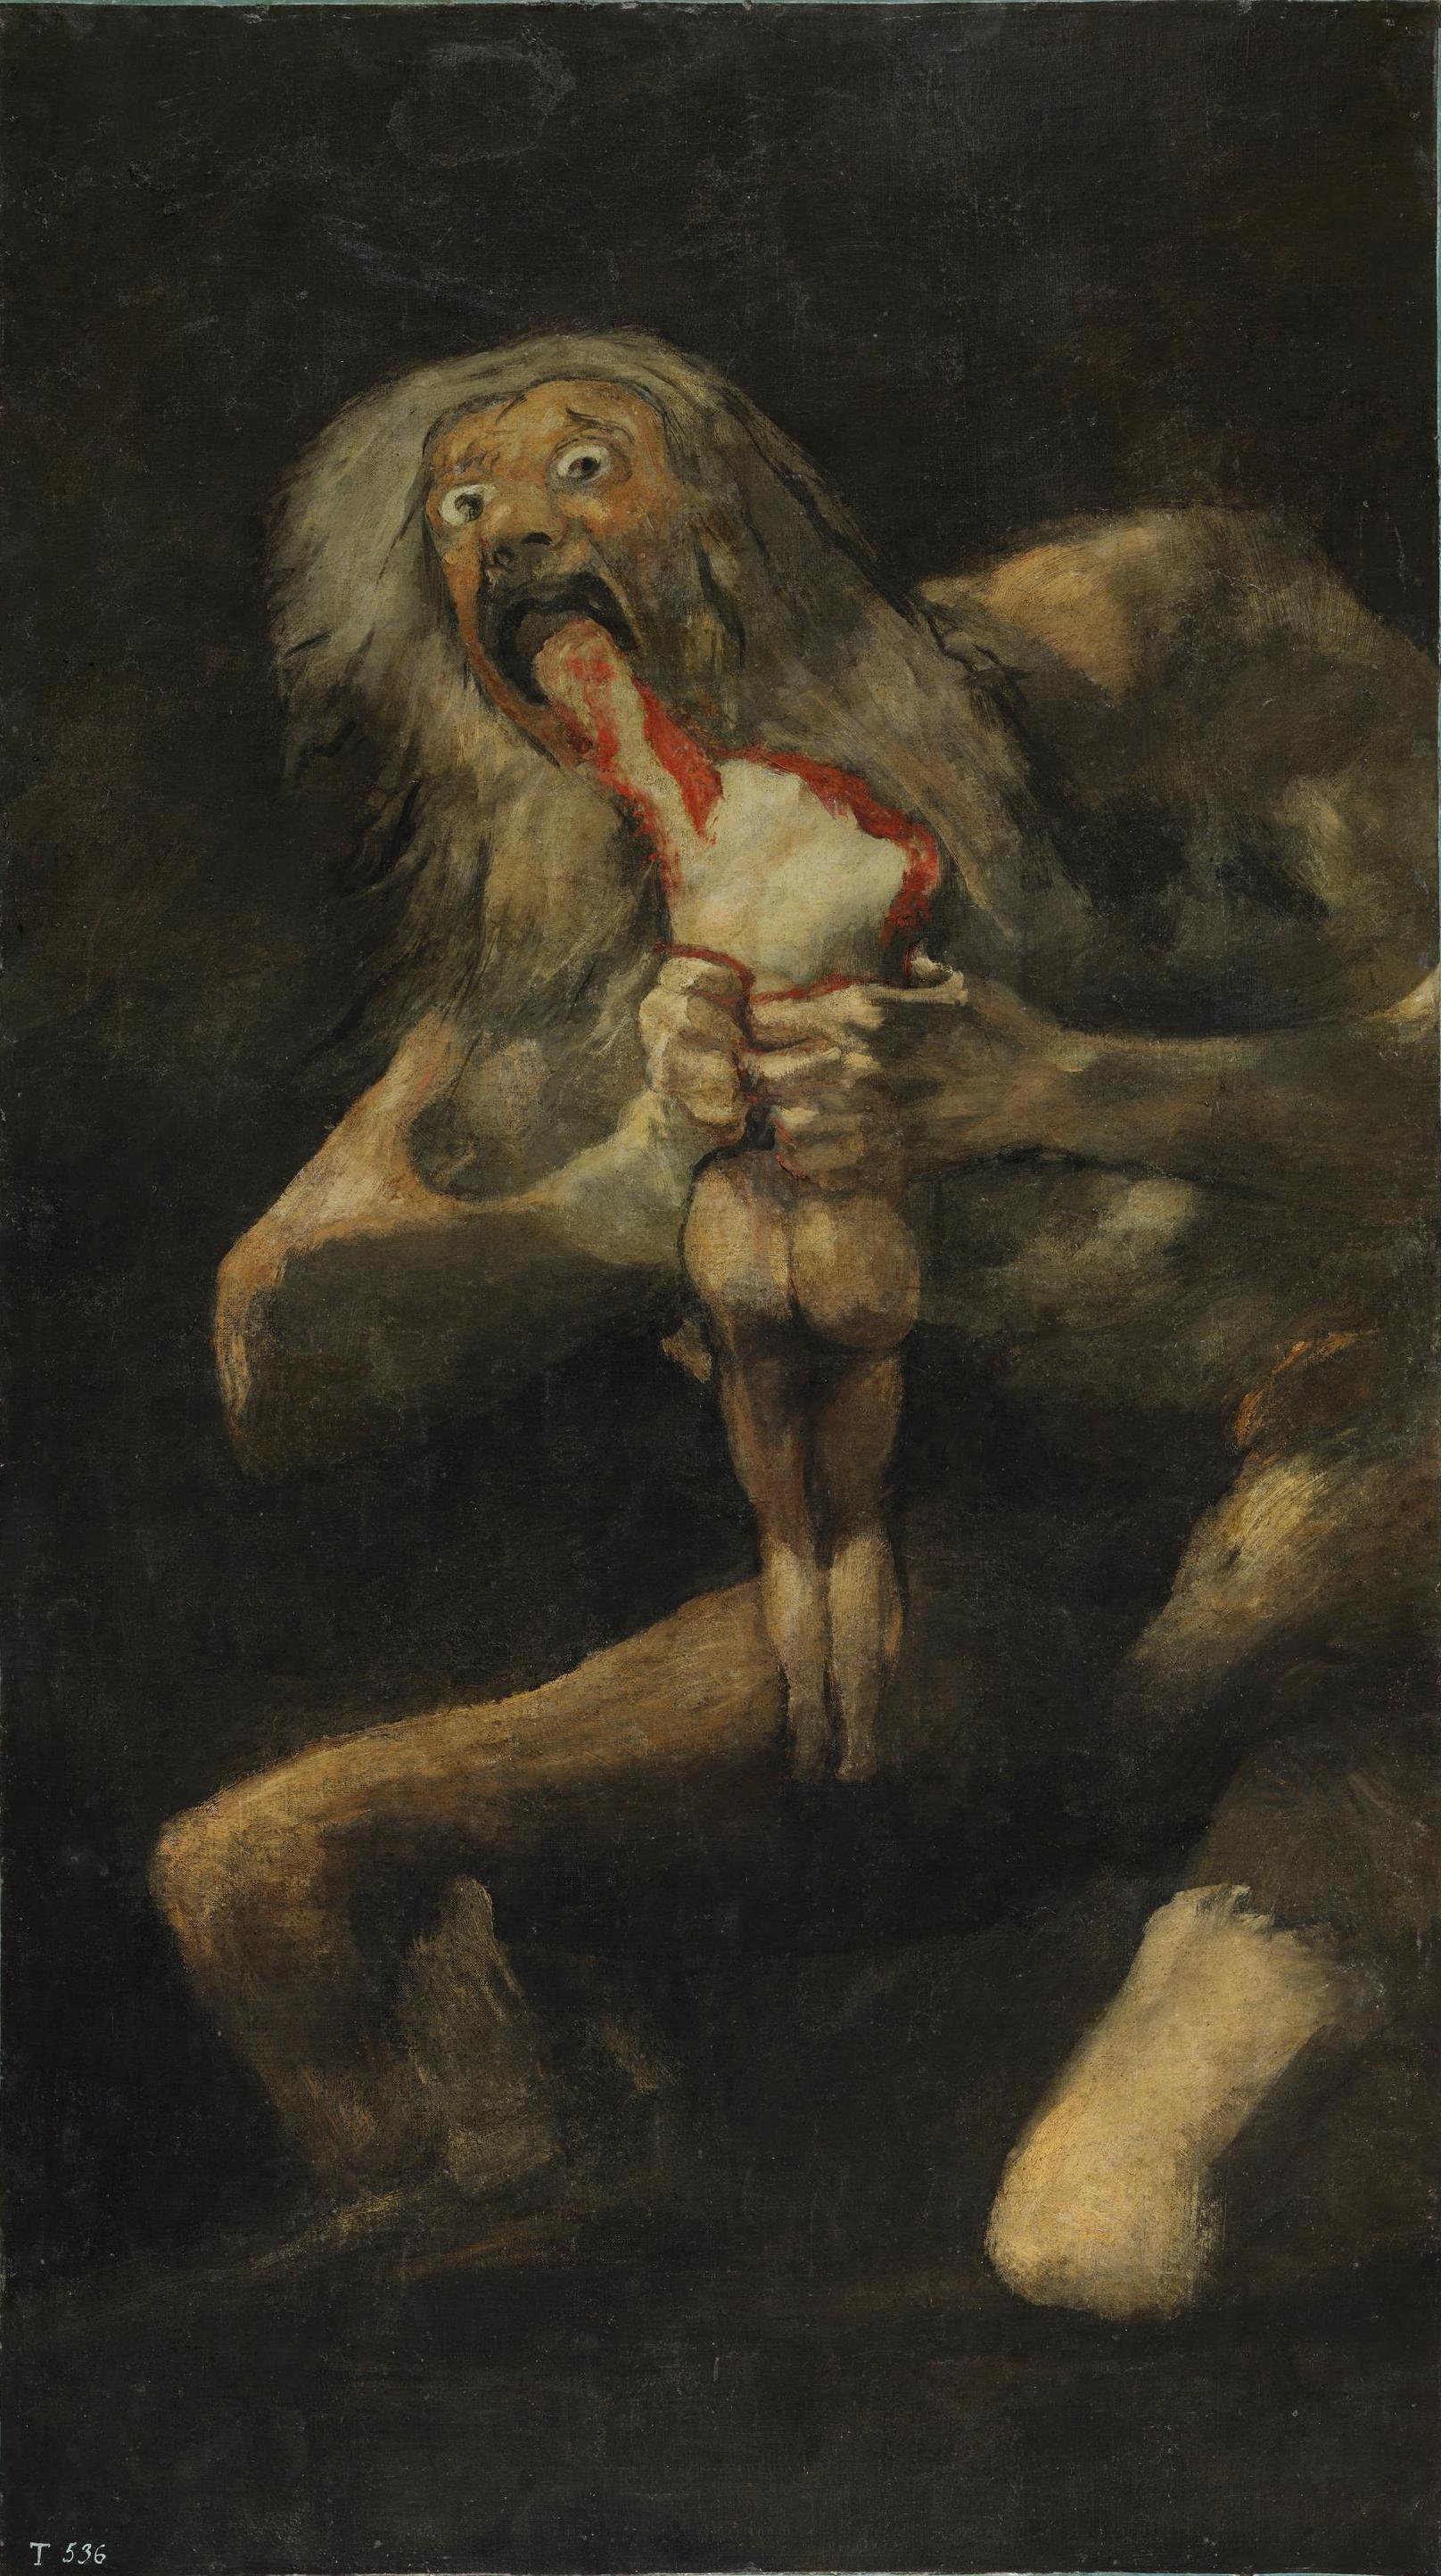 Saturno devora seu filho - Francisco de Goya